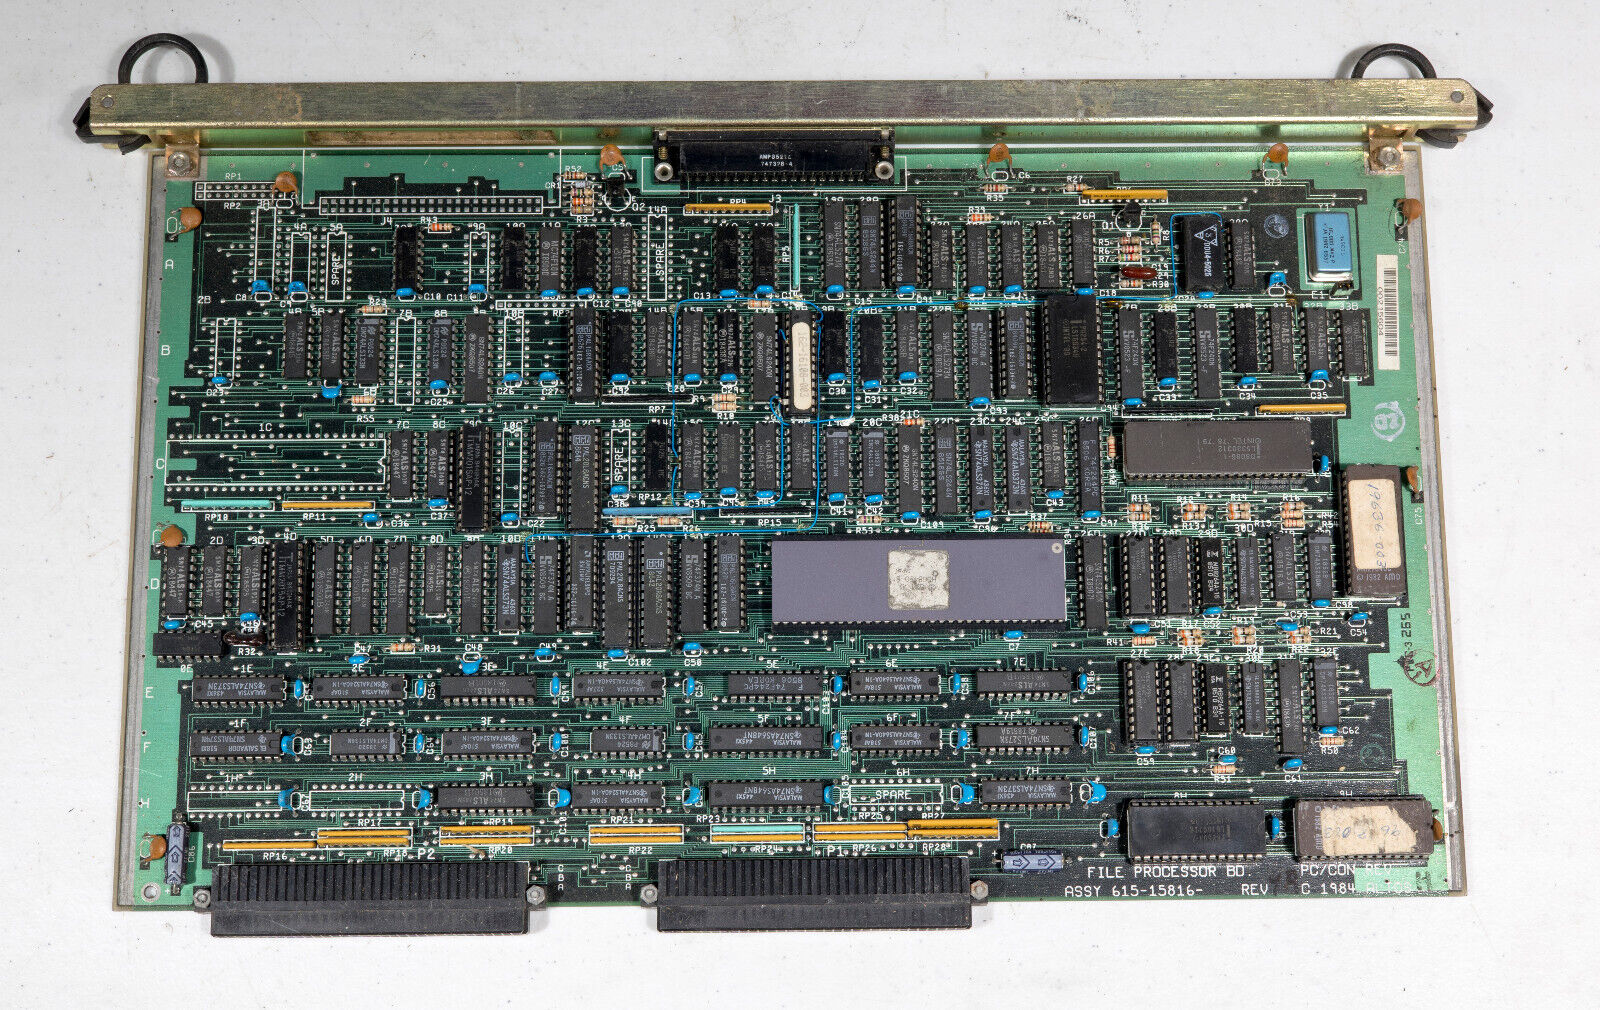 Vintage Altos 2086 computer File Processor system board